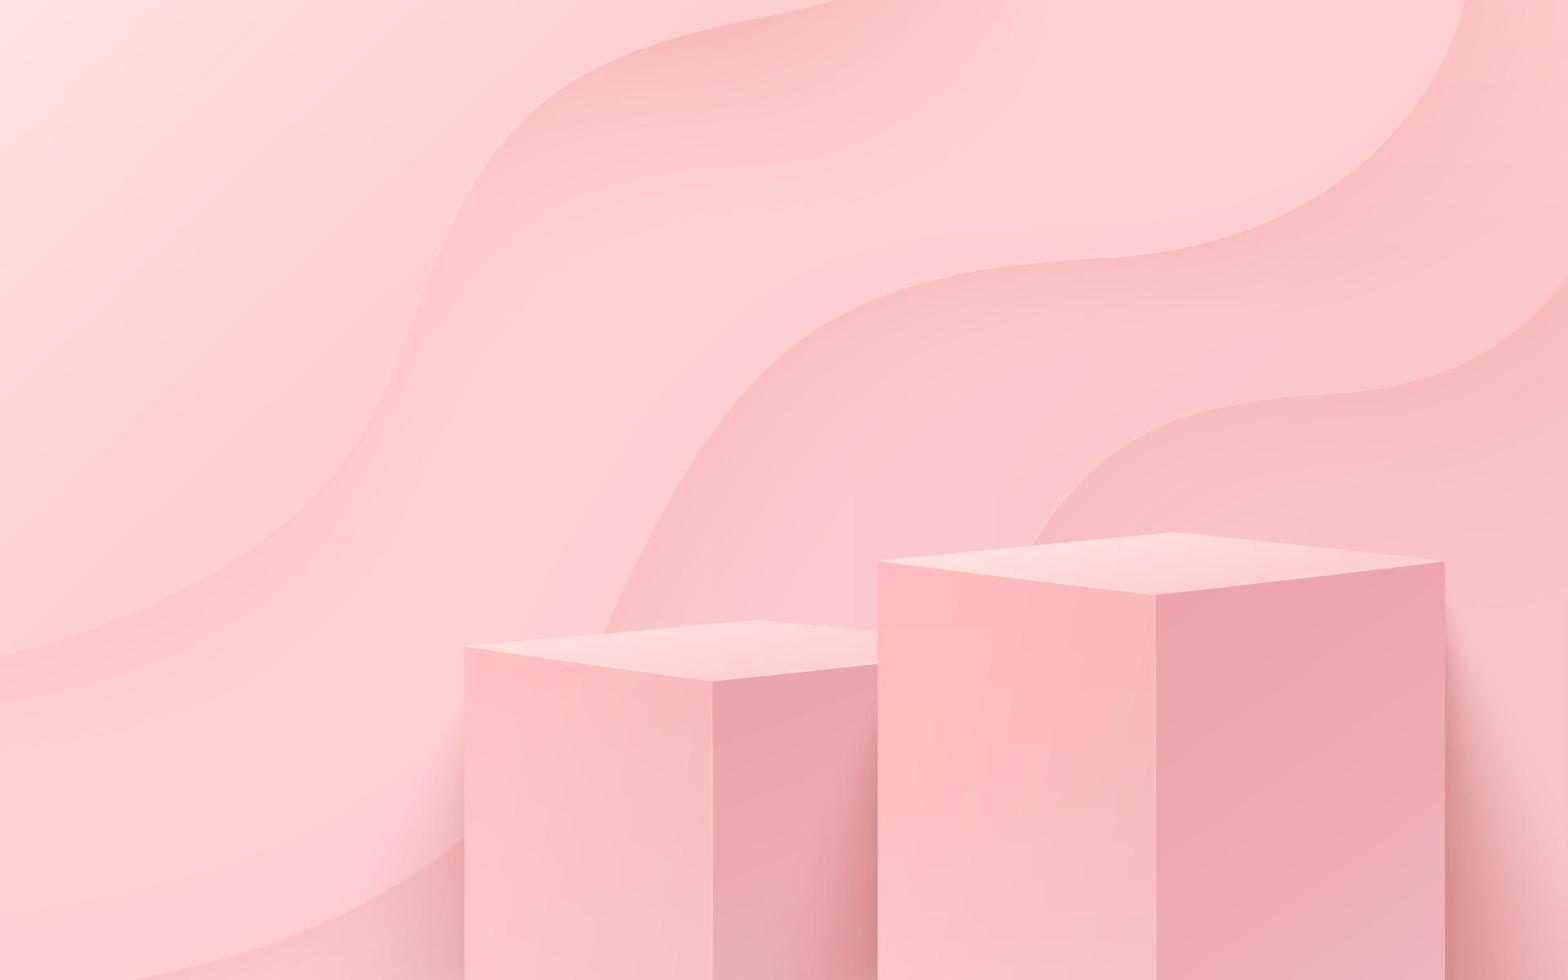 vecteur abstrait rendant la forme 3d pour l'affichage des produits publicitaires avec espace de copie. podium de cube rose clair moderne avec une pièce vide pastel et un fond de motif de courbe. concept de studio minimal.